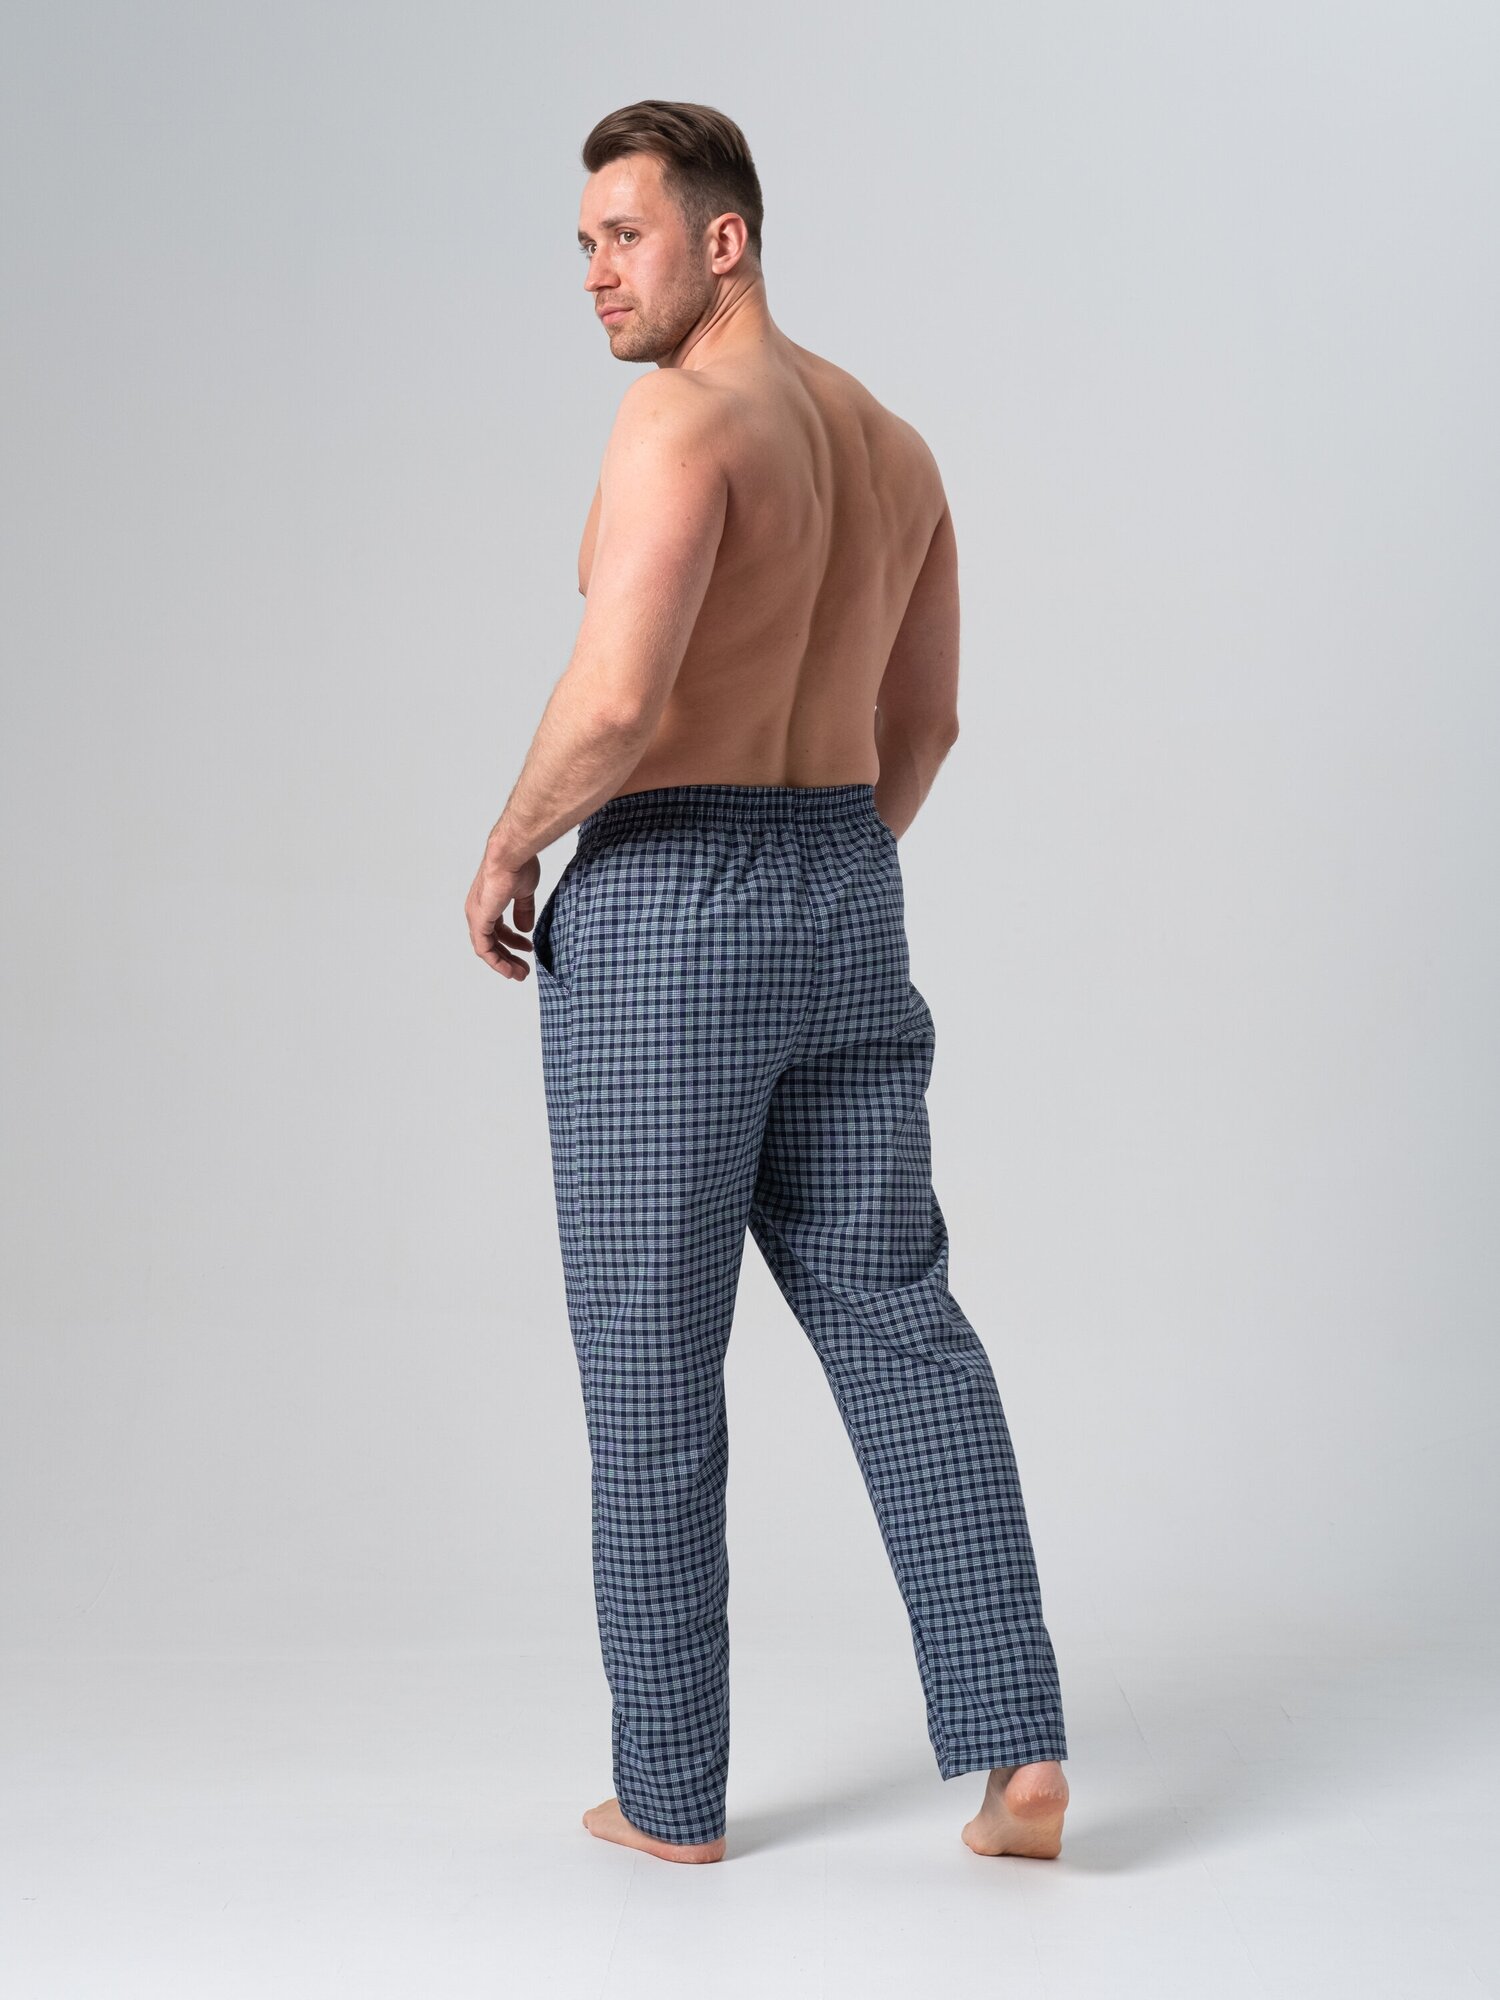 Брюки мужские домашние, NL TEXTILE GROUP, штаны пижамные, принт - клетка, на резинке, размер 54 - фотография № 5